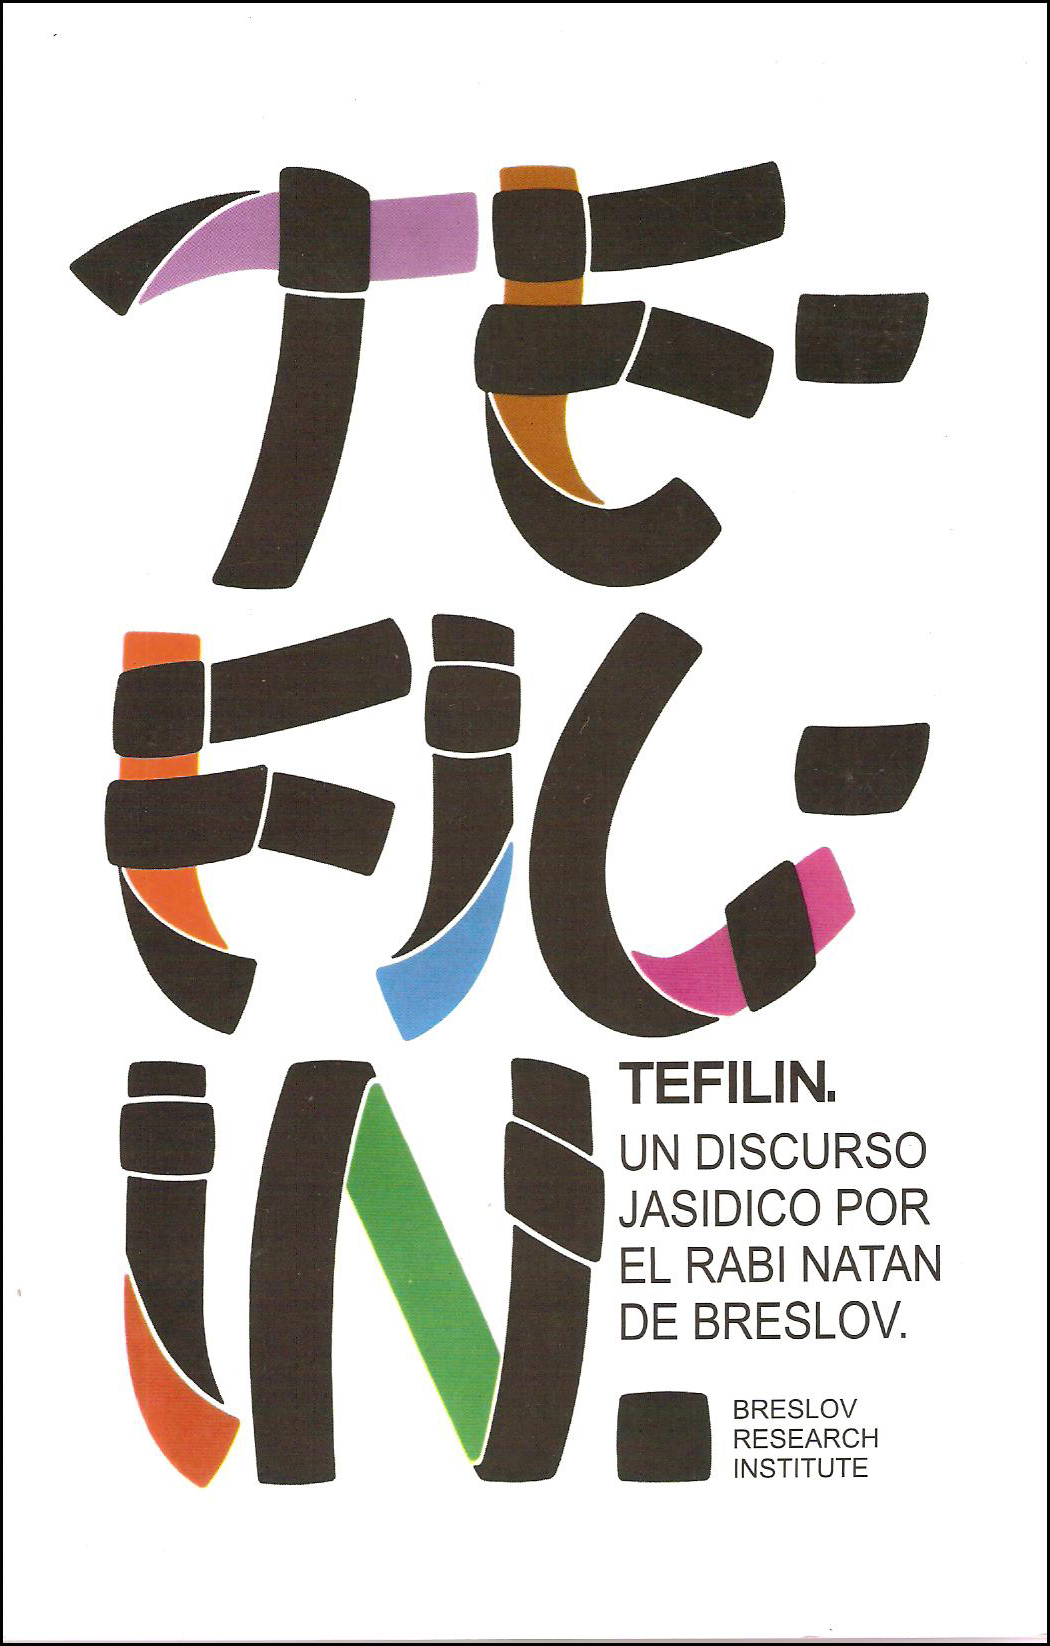 TEFILIN-UN DISCURSO JASIDICO